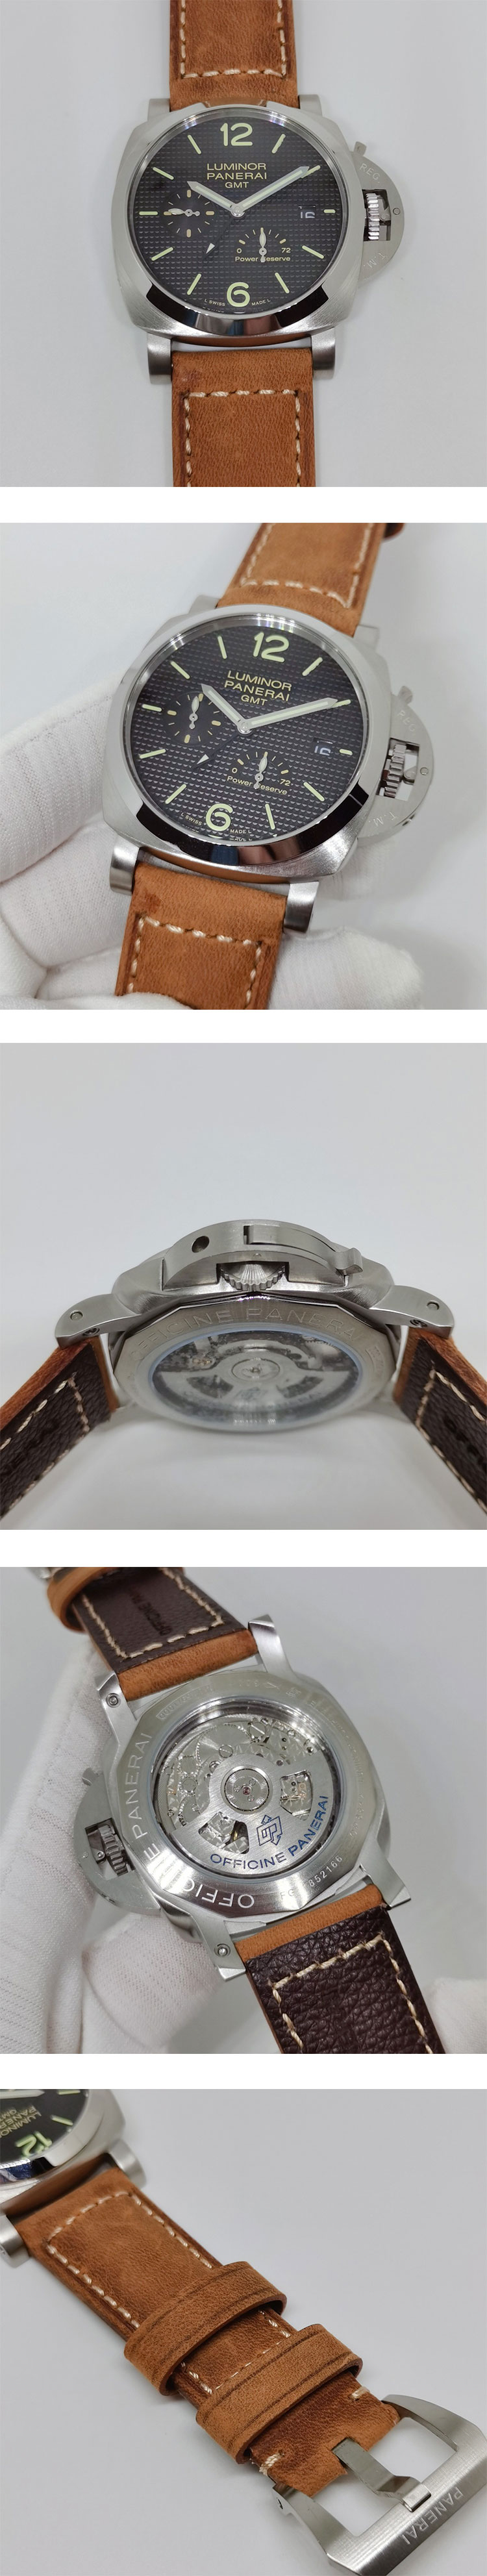 パネライコピー腕時計 ルミノール 1950 3デイズ GMT アッチャイオ パワーリザーブ メンズ PAM00537